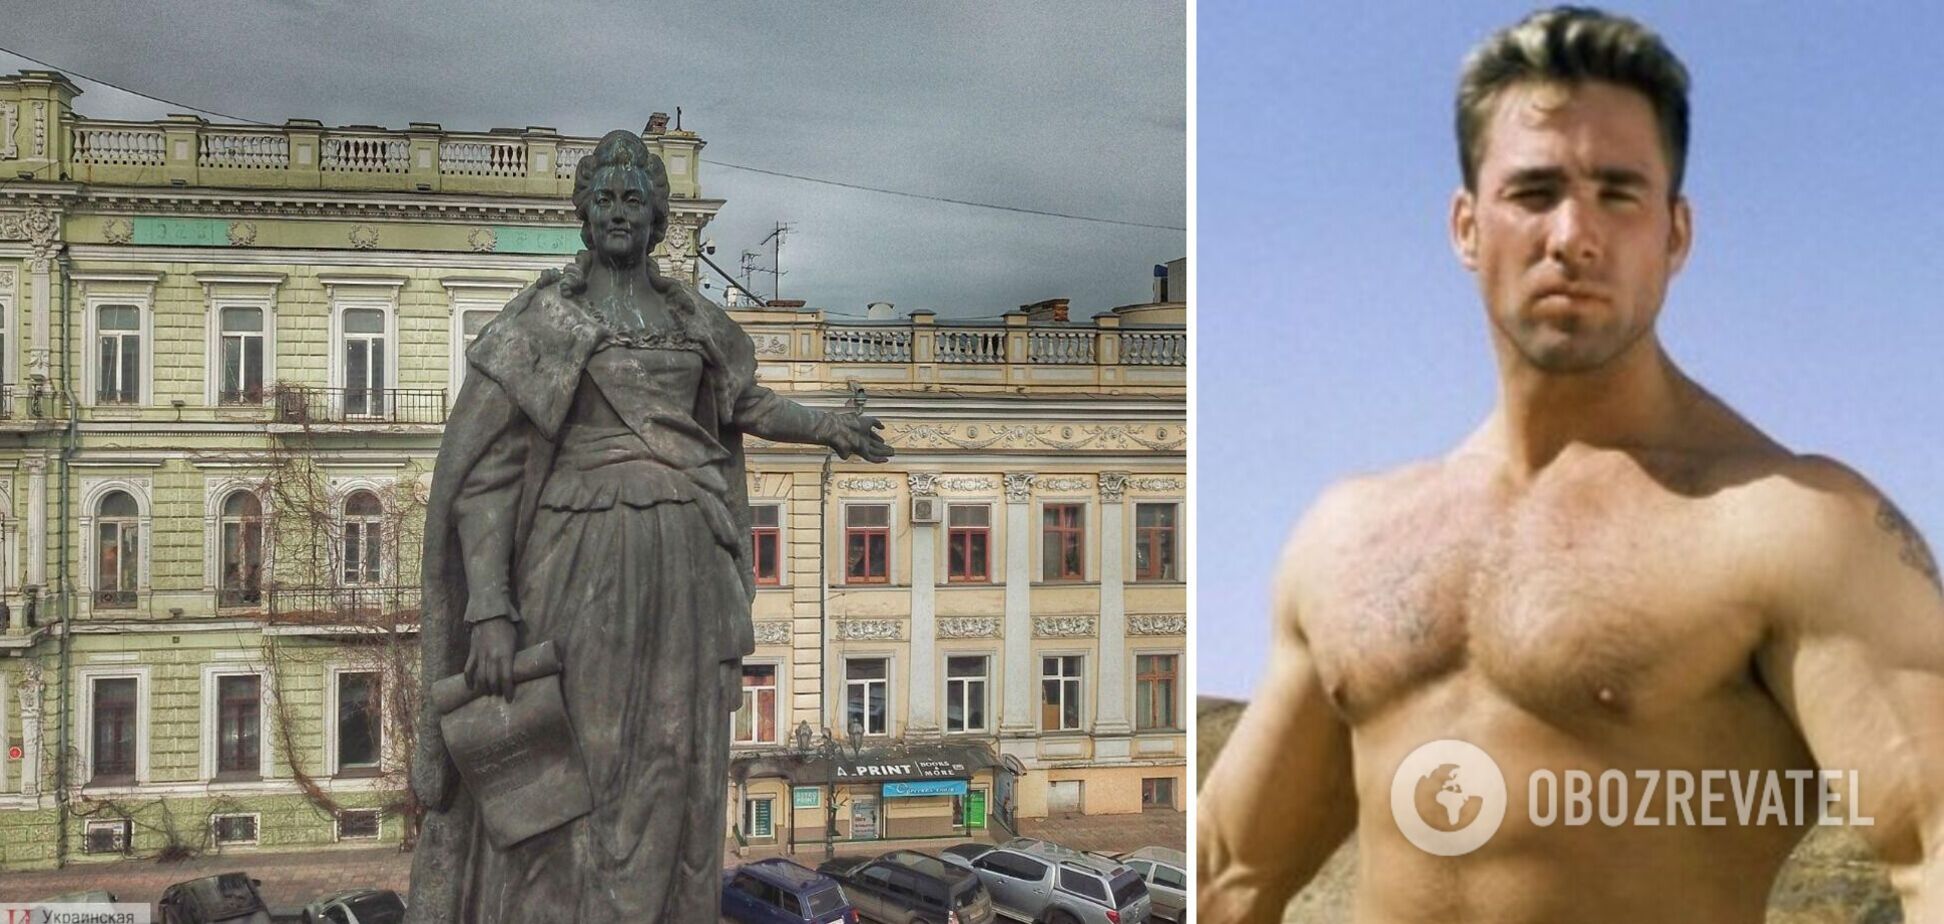 Петиция о замене памятника Екатерине II в Одессе на памятник американскому порноактеру собрала необходимые 25 тысяч подписей